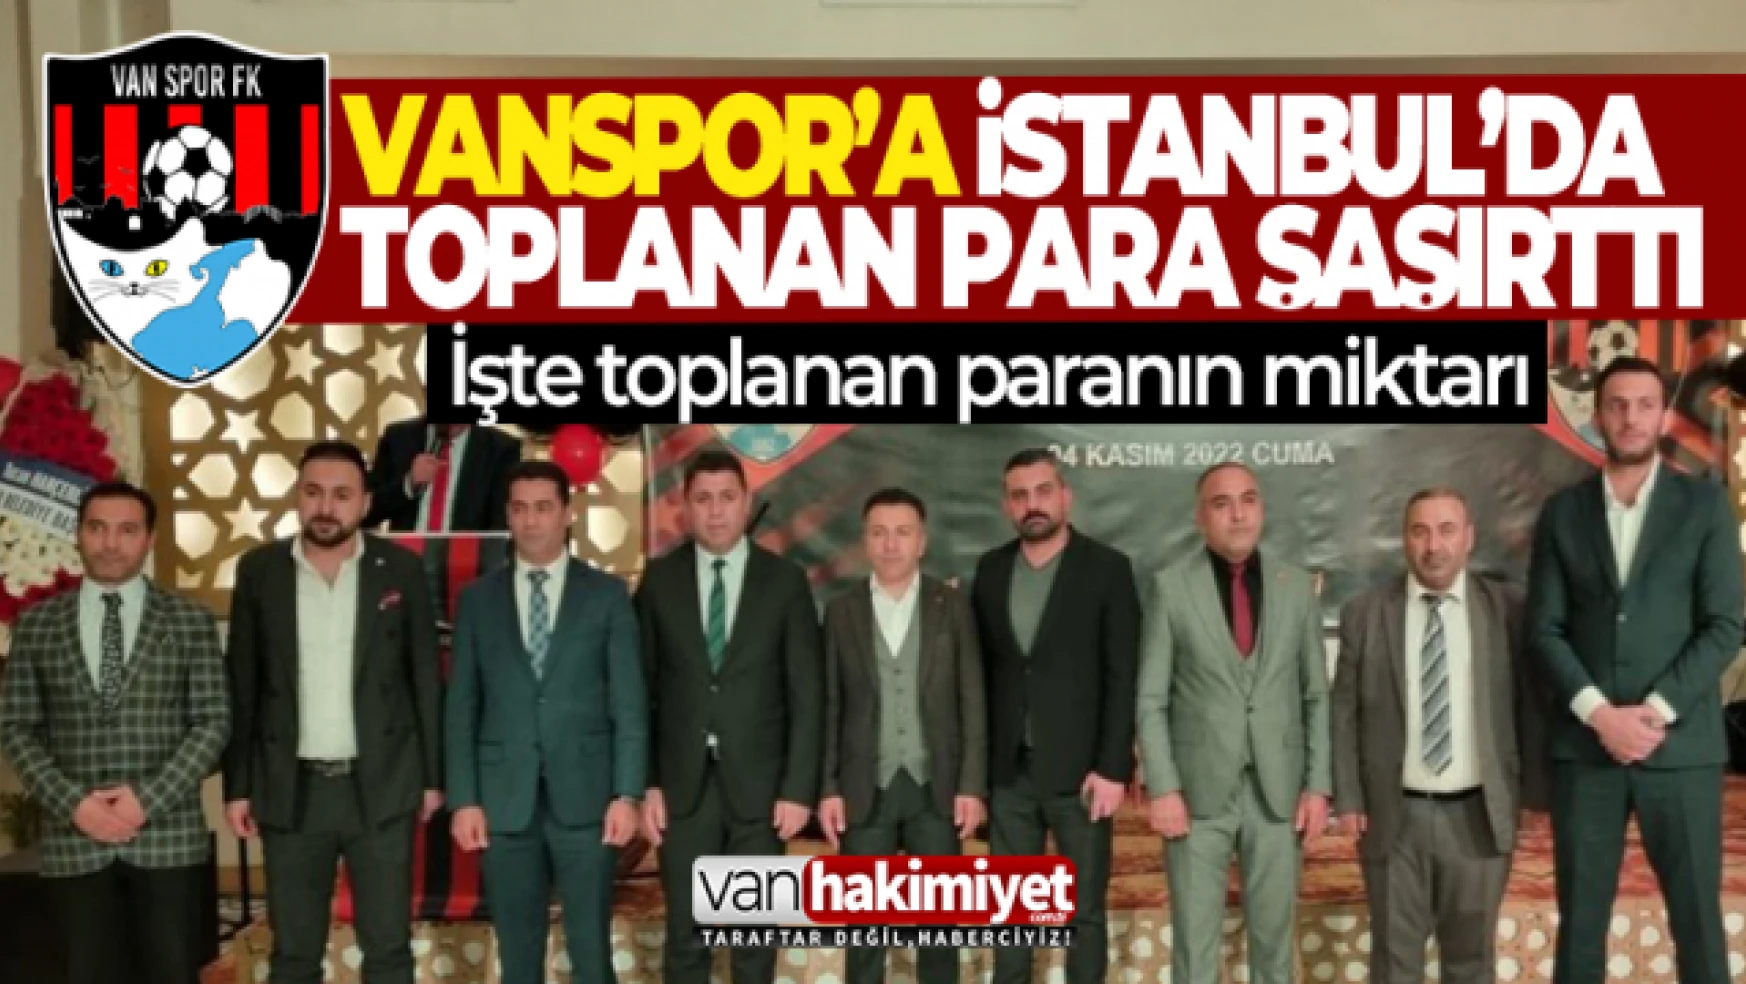 Vanspor'un İstanbul'daki destek gecesi hayal kırıklığı yaşattı